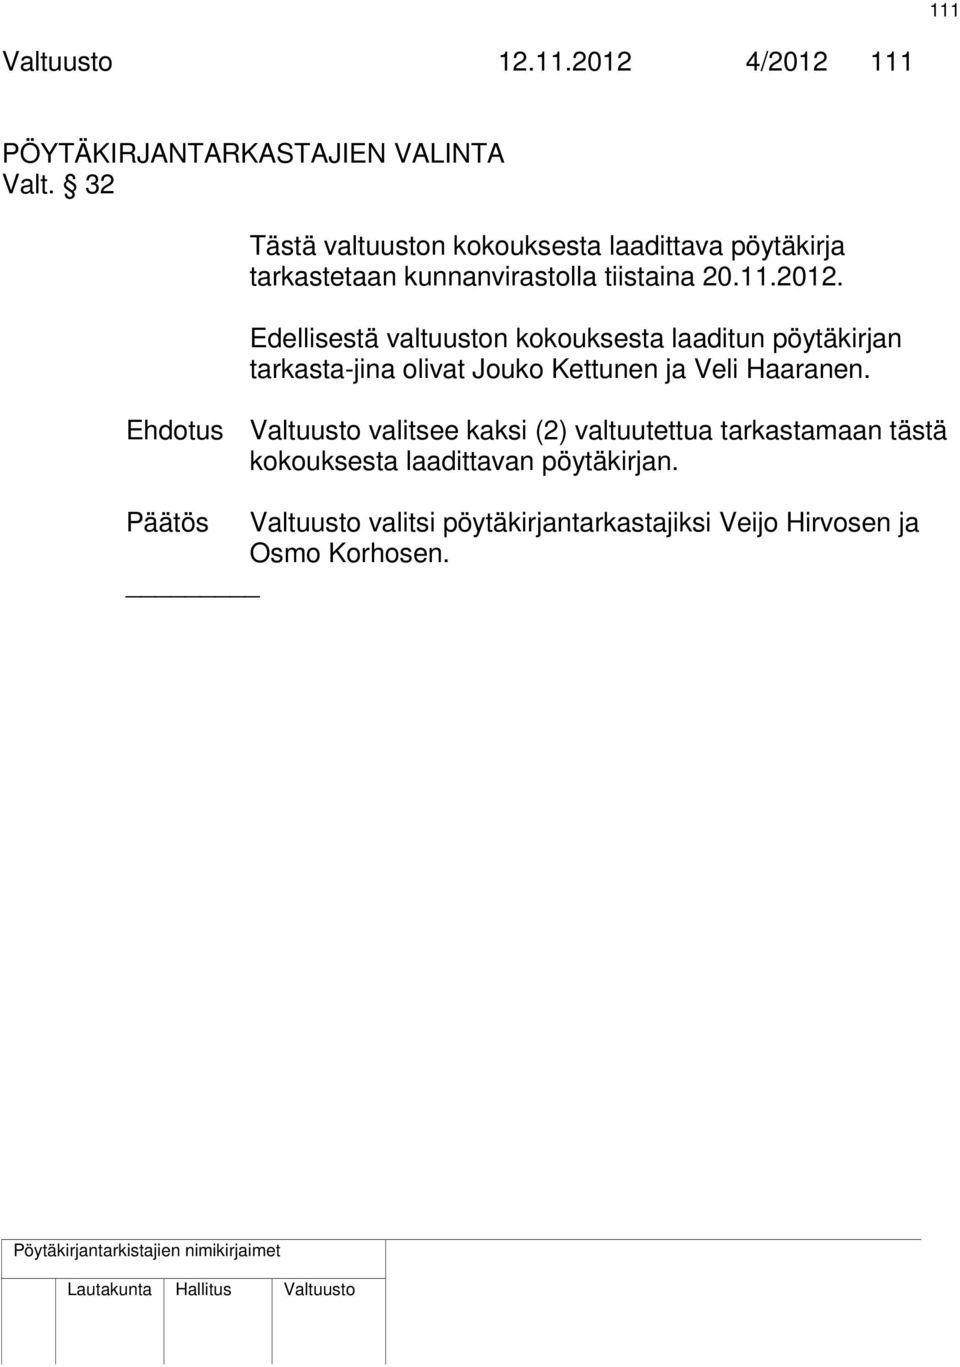 Edellisestä valtuuston kokouksesta laaditun pöytäkirjan tarkasta-jina olivat Jouko Kettunen ja Veli Haaranen.